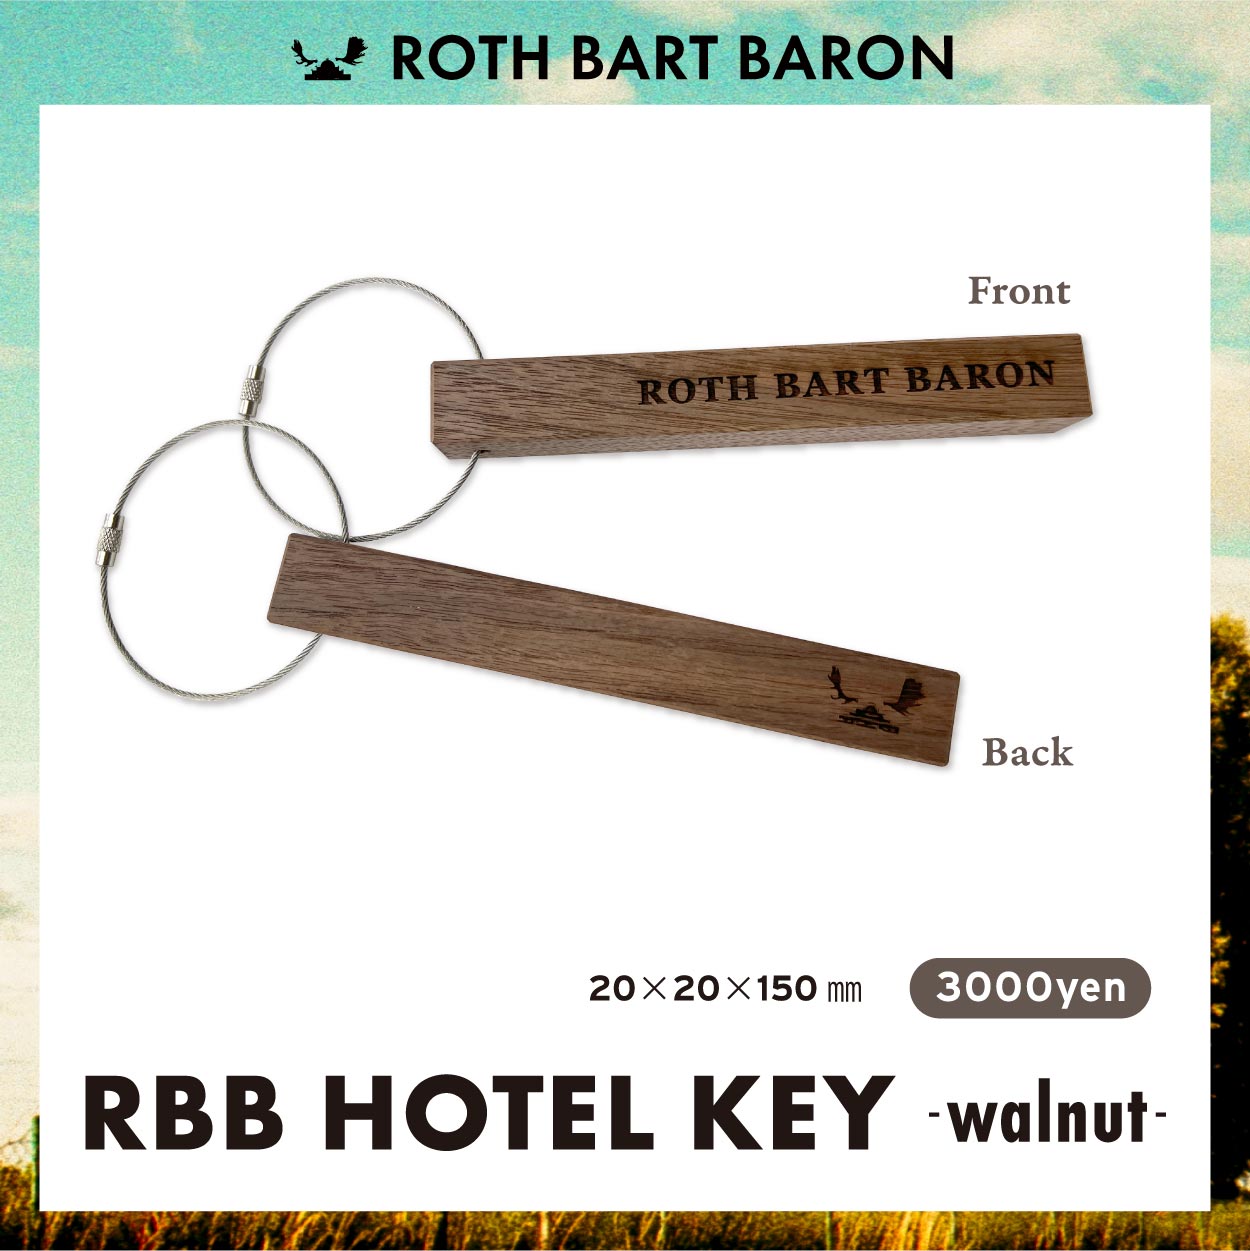 RBB HOTEL KEY - walnut-